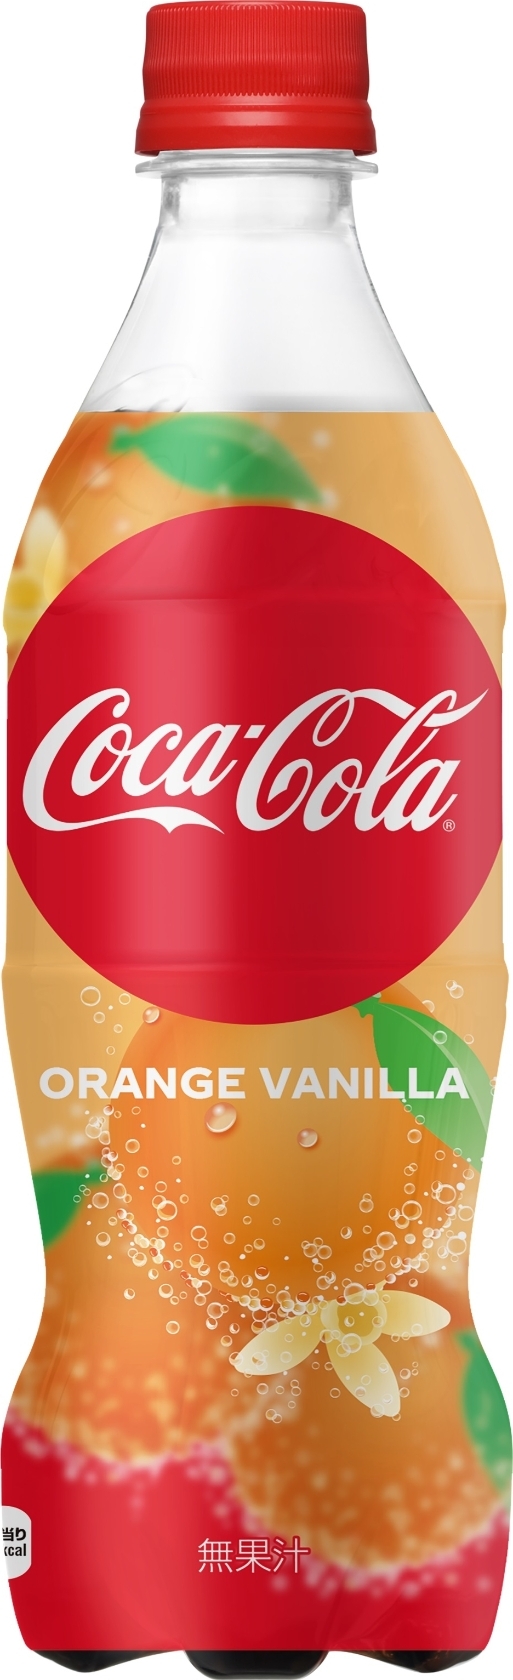 中評価 コカ コーラ コカ コーラ オレンジバニラのクチコミ 評価 カロリー 値段 価格情報 もぐナビ